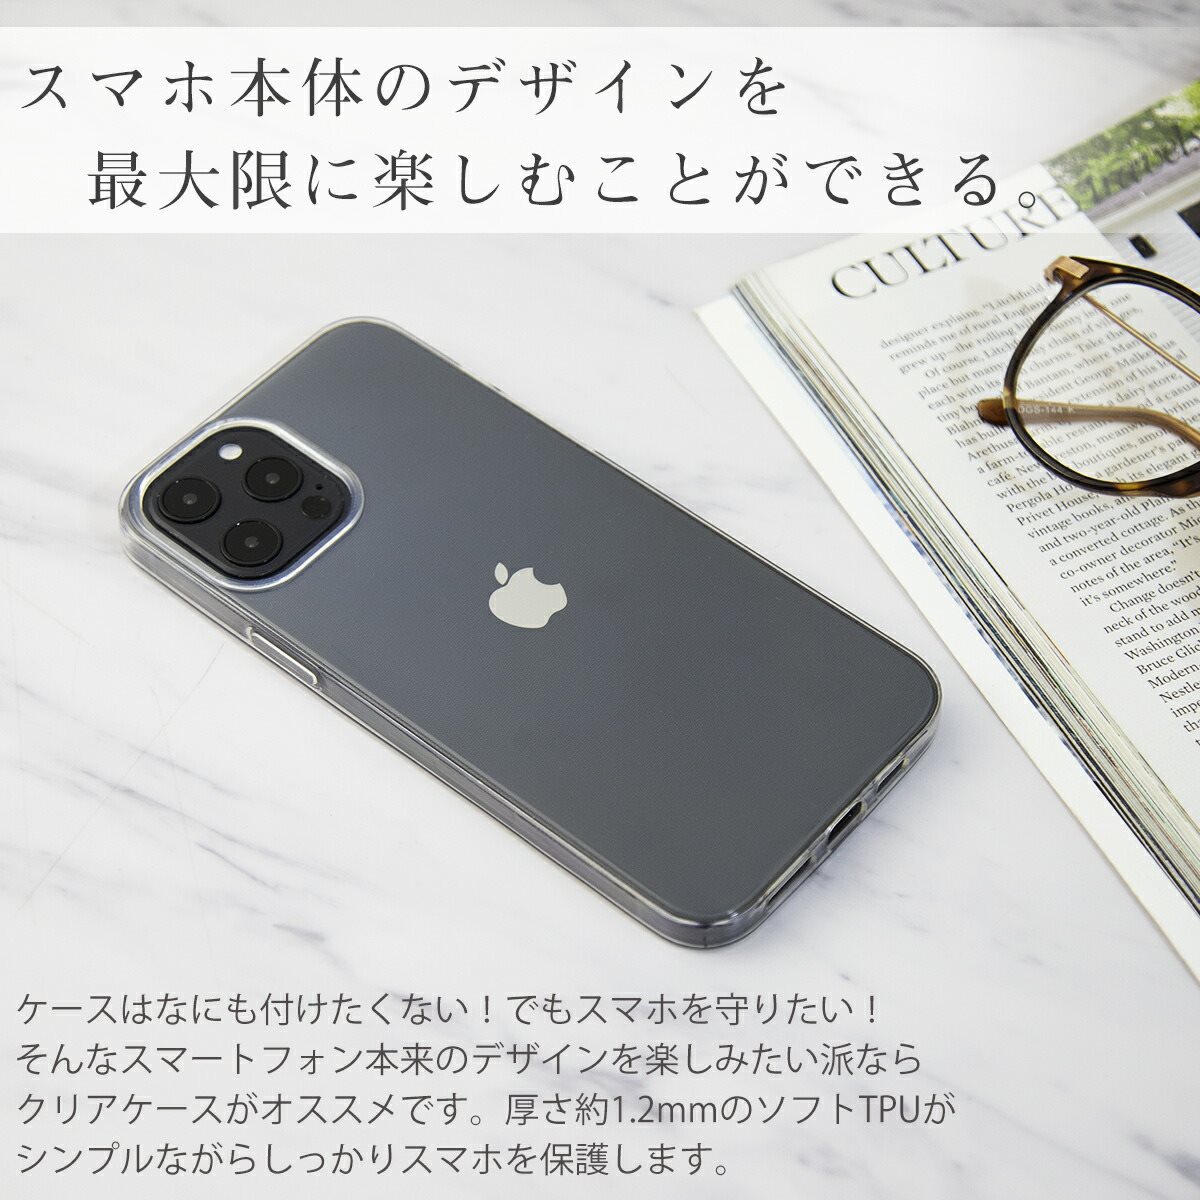 楽天市場 Iphone12mini Iphone12 Iphone 12 Pro Max Tpuクリアケース スマホケース 韓国 Tpu クリアケース おすすめ 人気 かっこいい スマホ ケース カバー アイフォン Iphone Sale 名入れスマホケースエックスモール